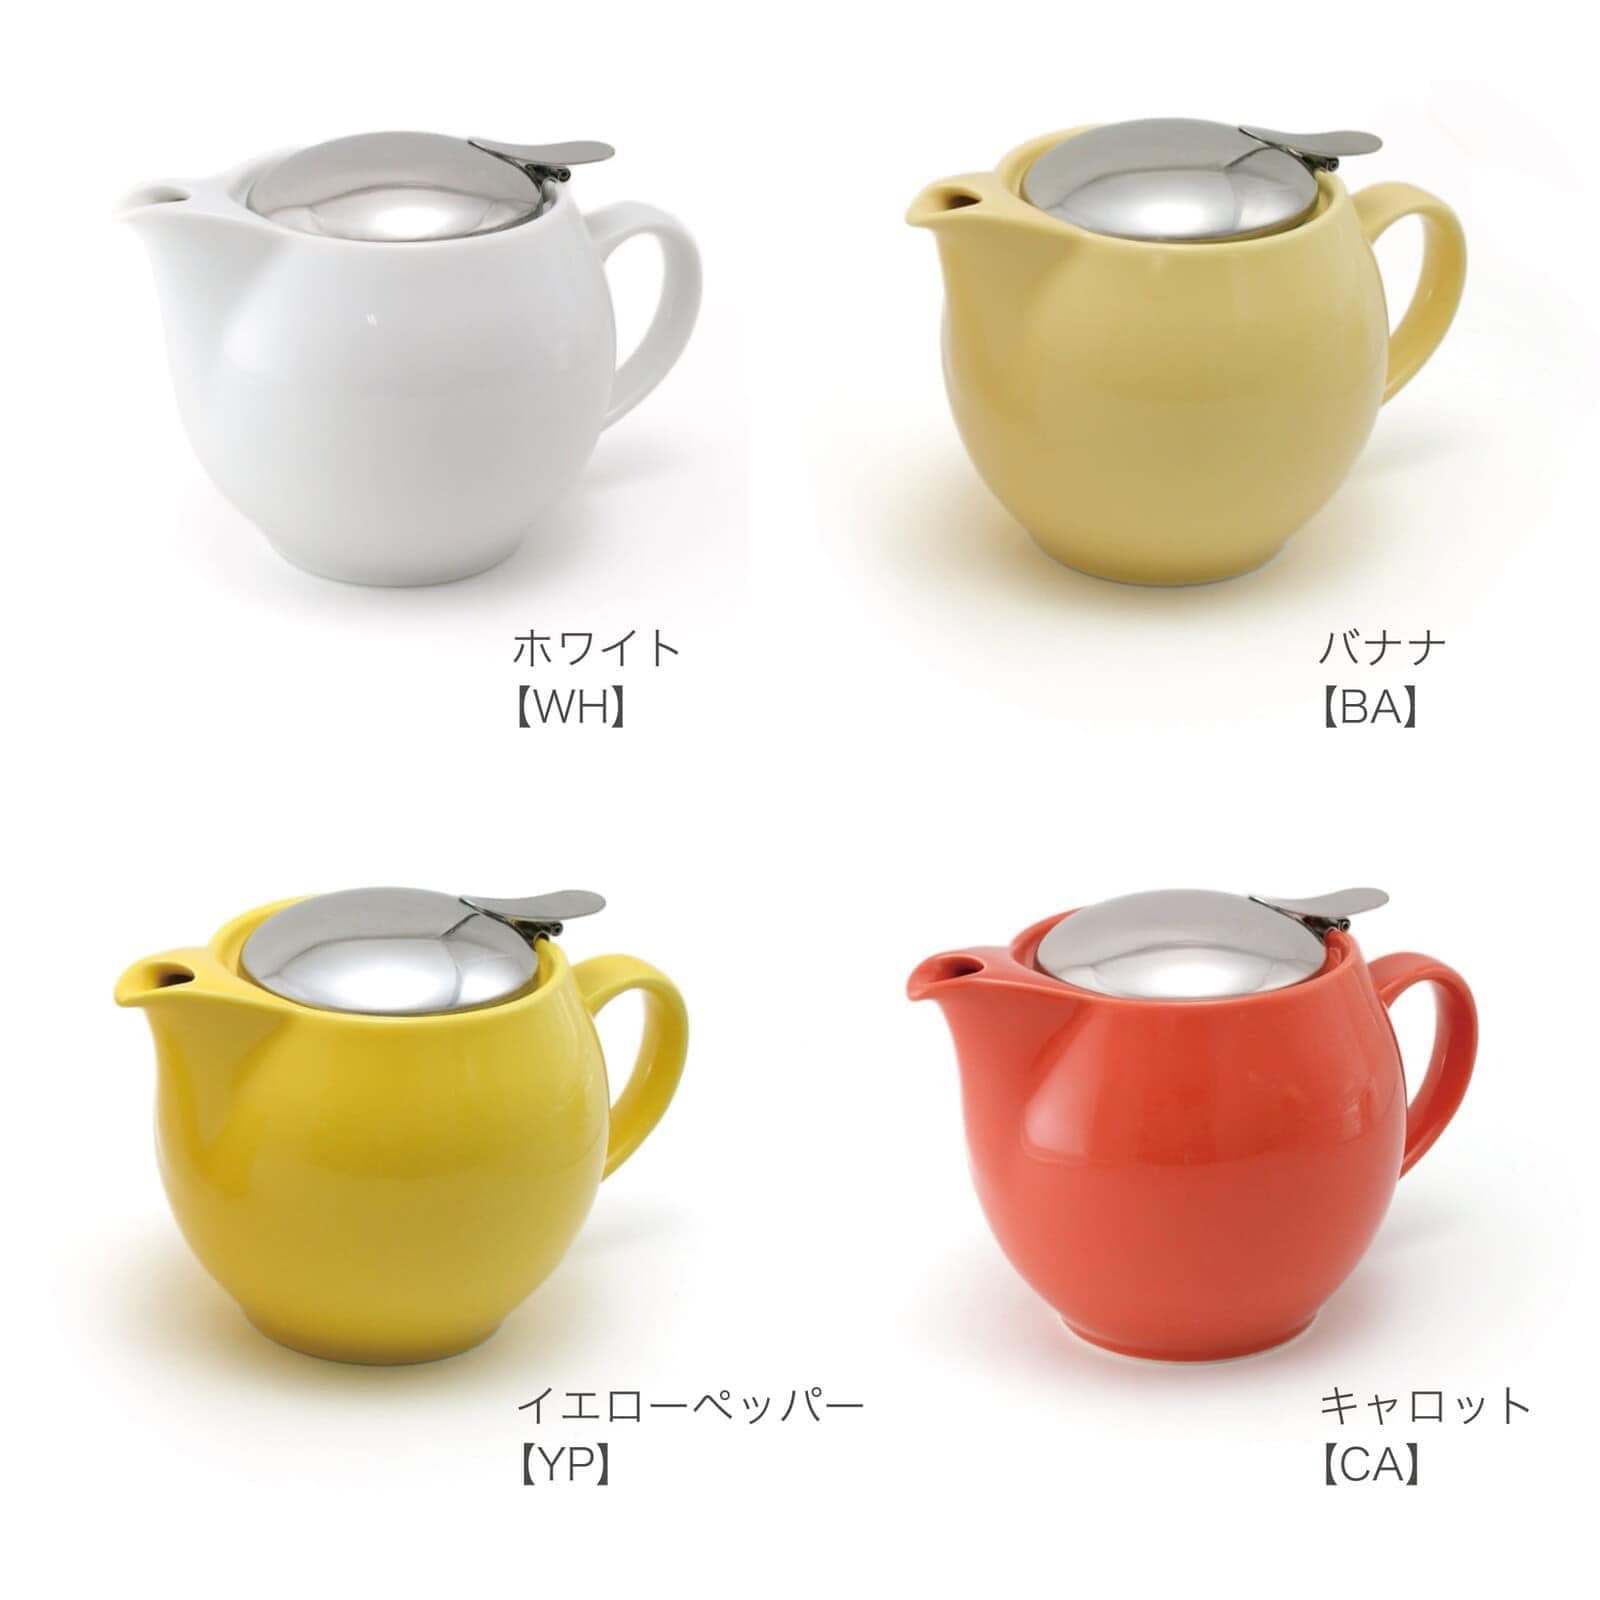 【cierto】Universal 茶壺 3人用 450cc 美濃燒5